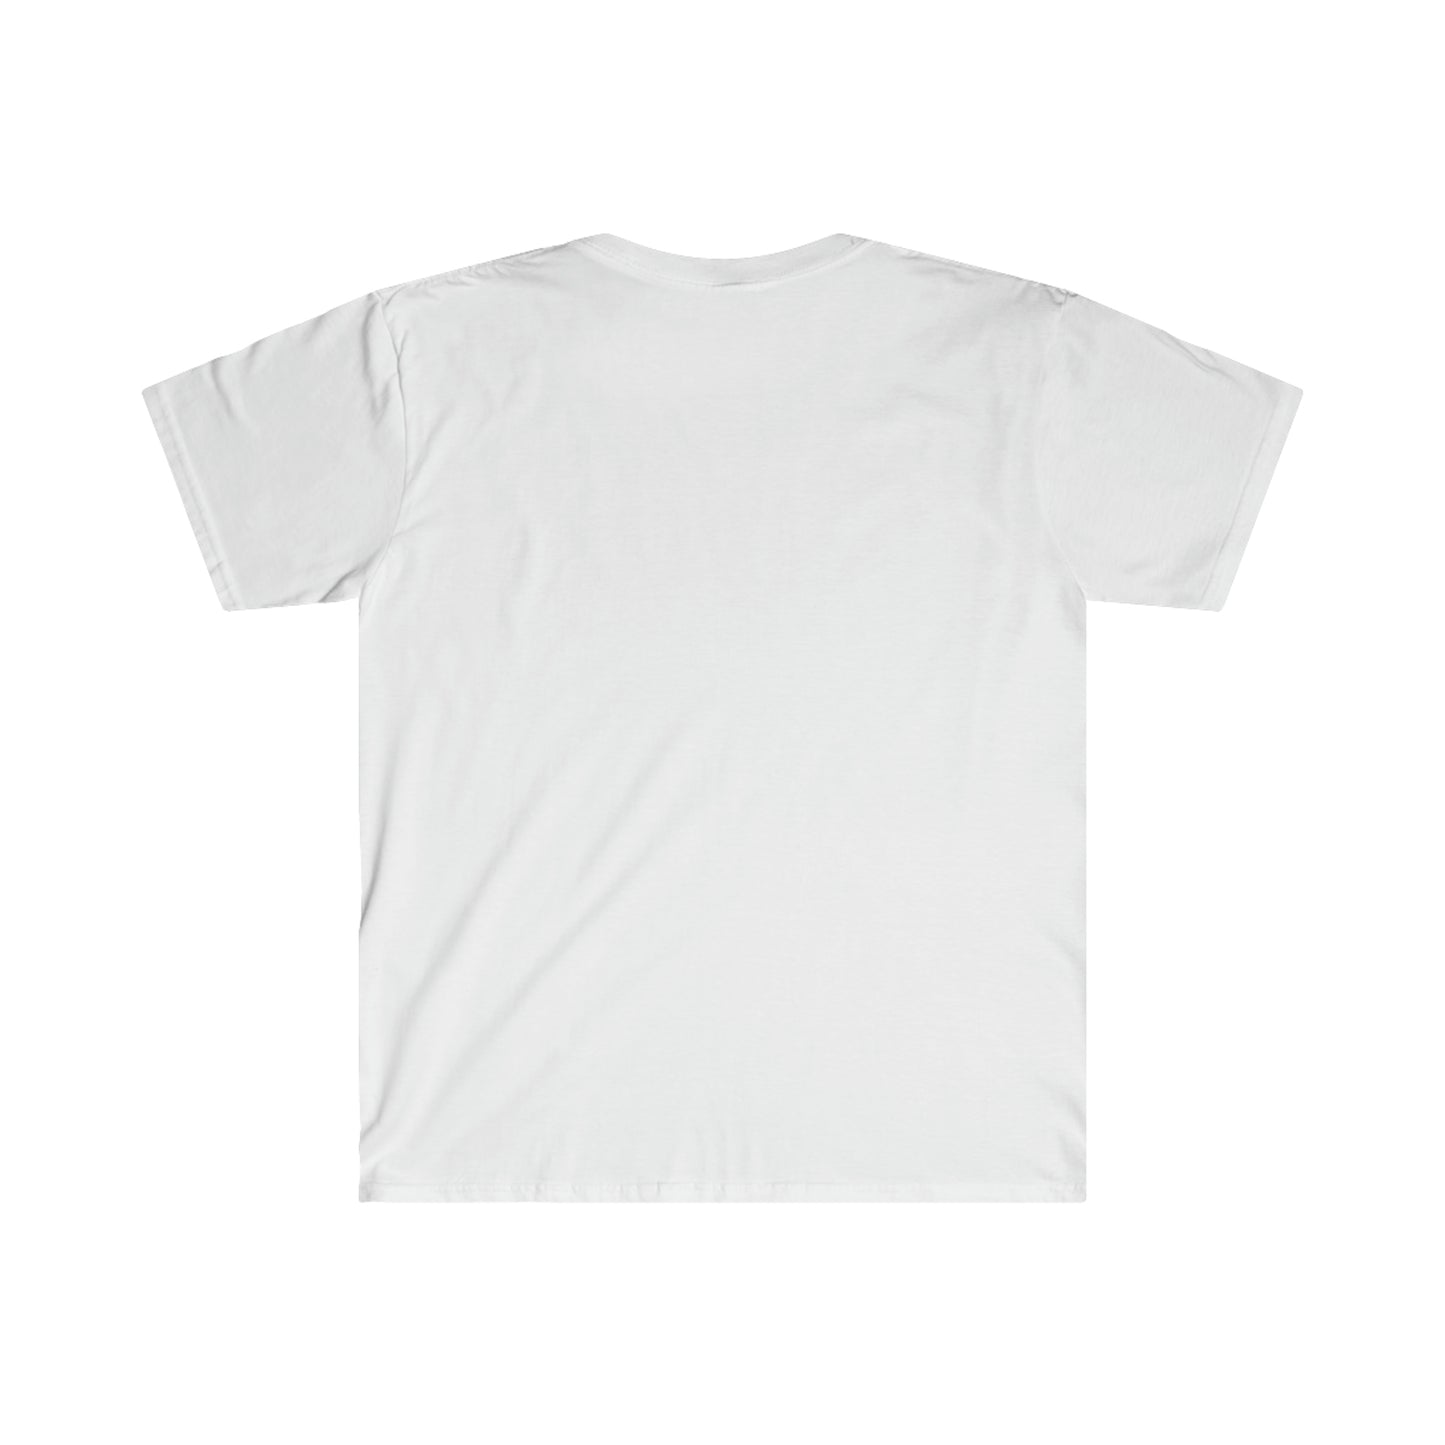 HS Matchbook Softstyle T-Shirt